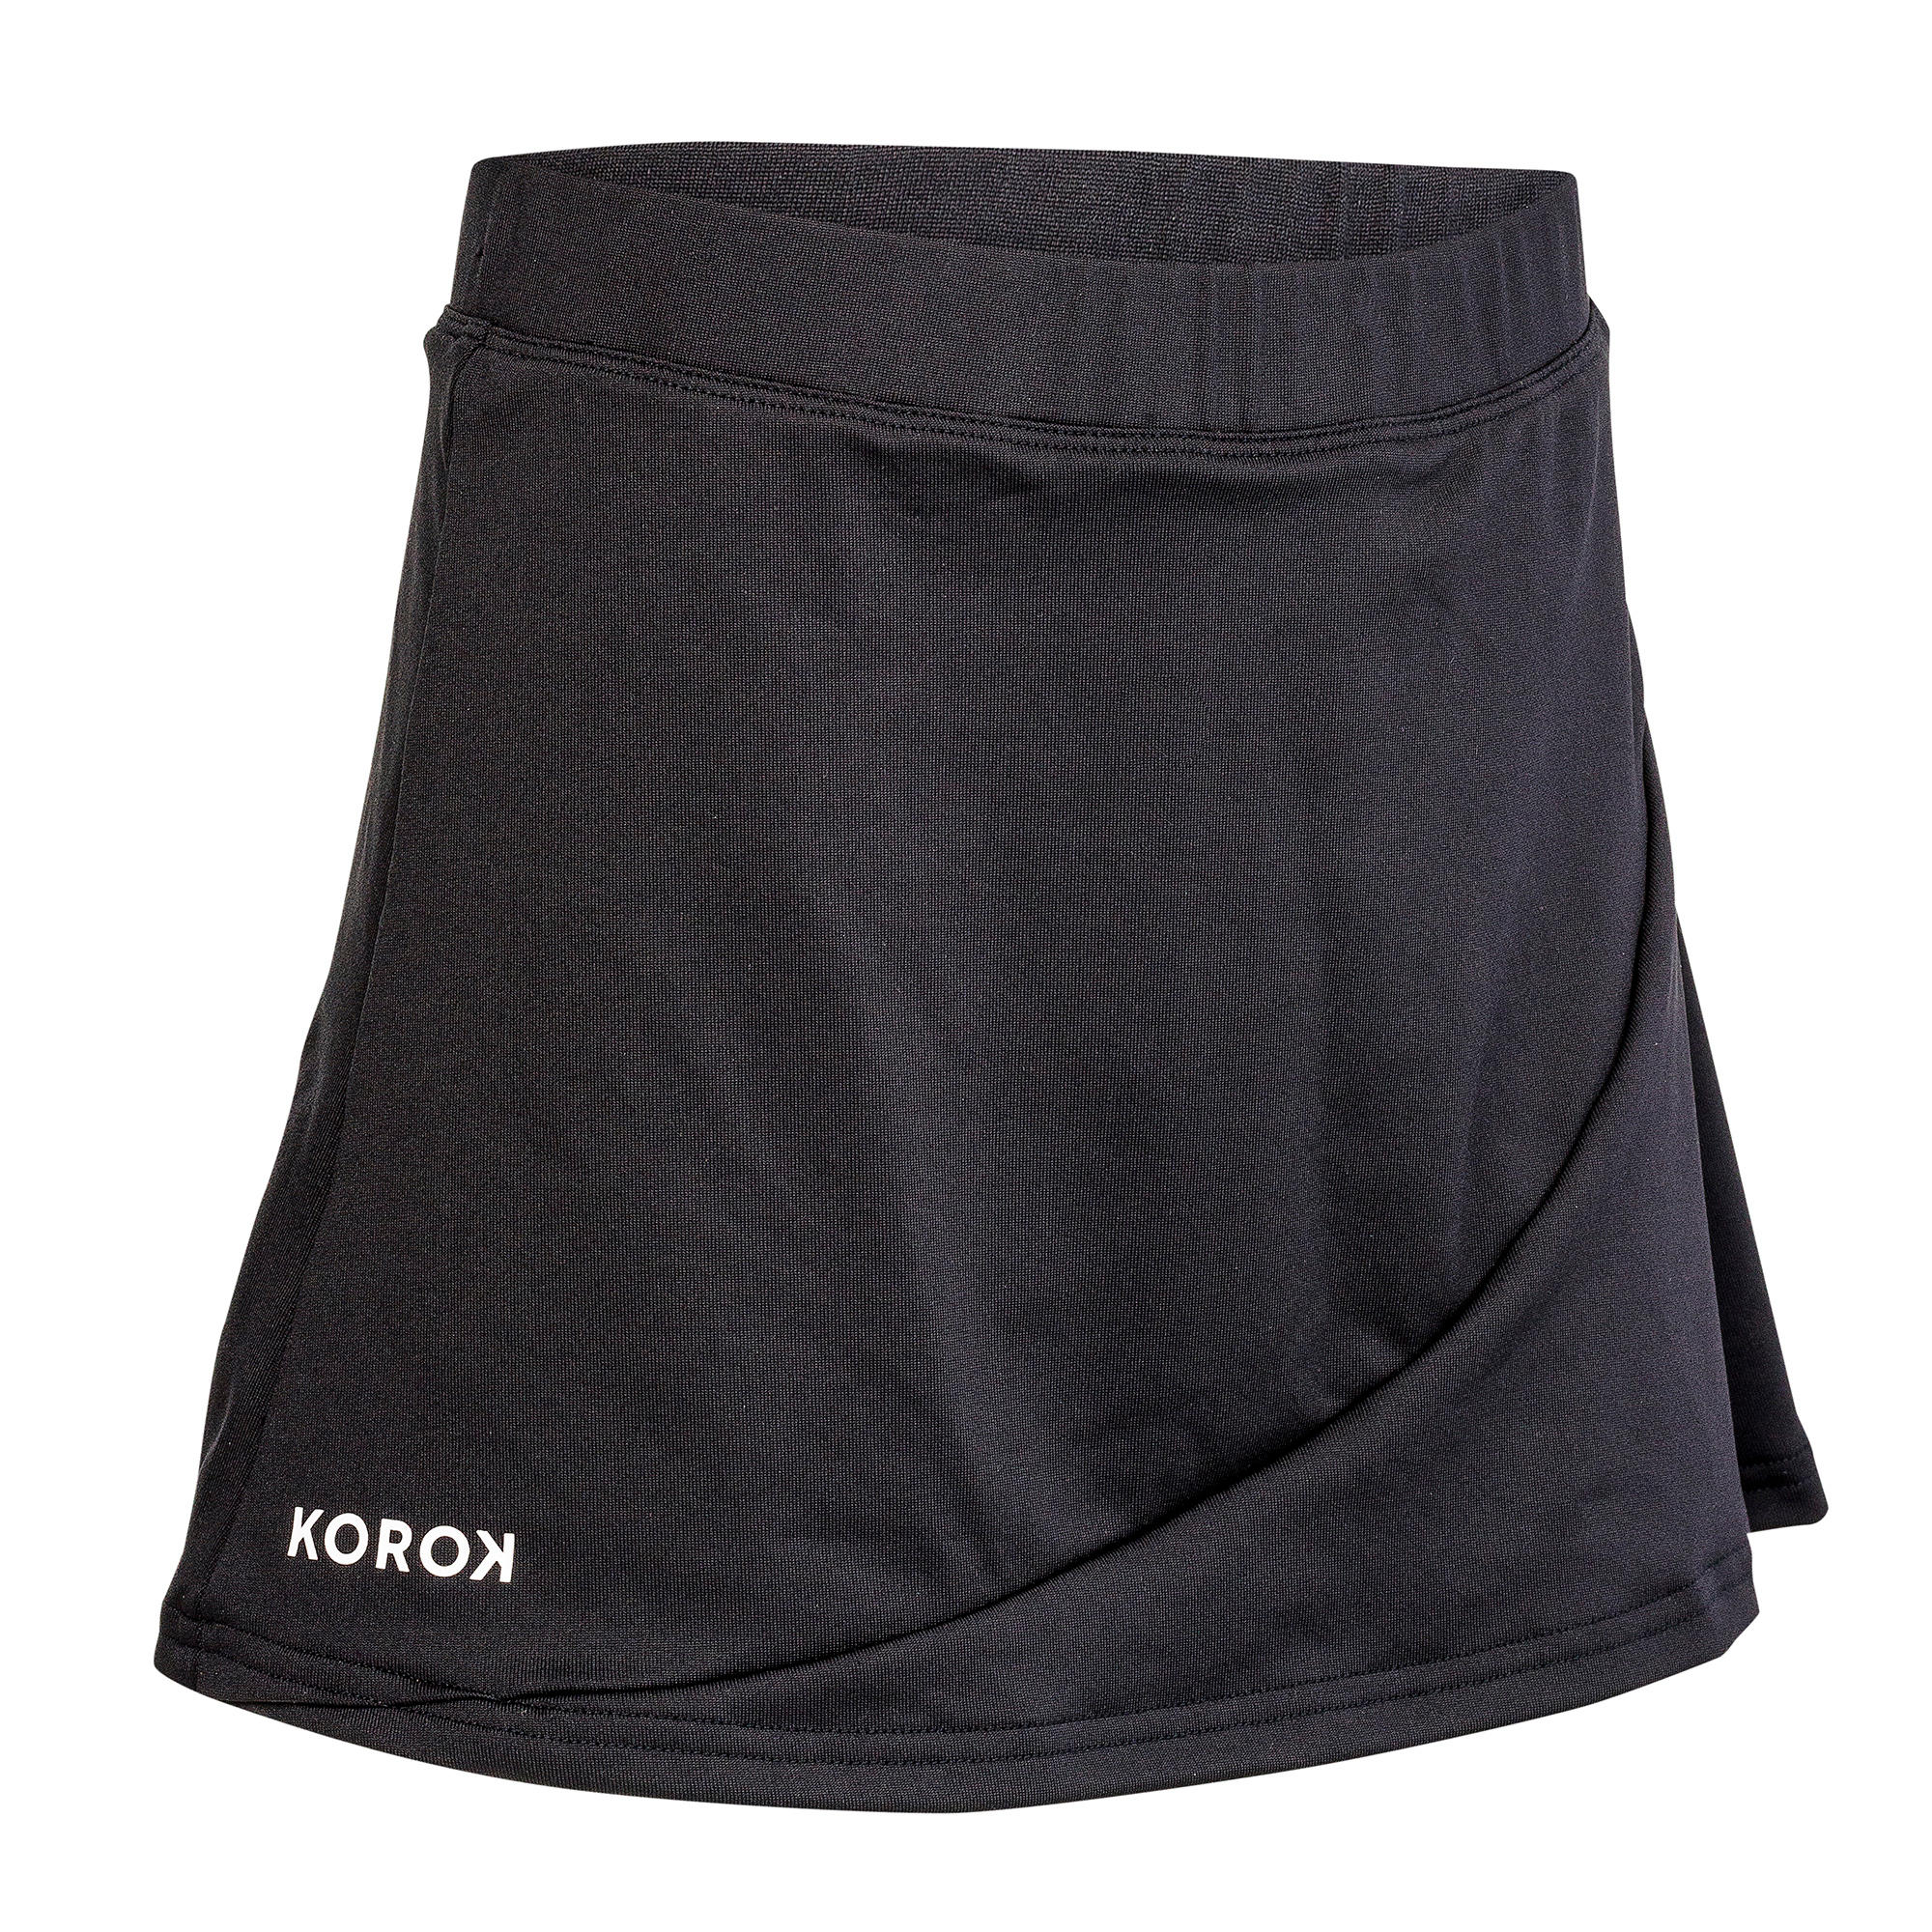 KOROK FH500 Girls' Field Hockey Skirt - Black